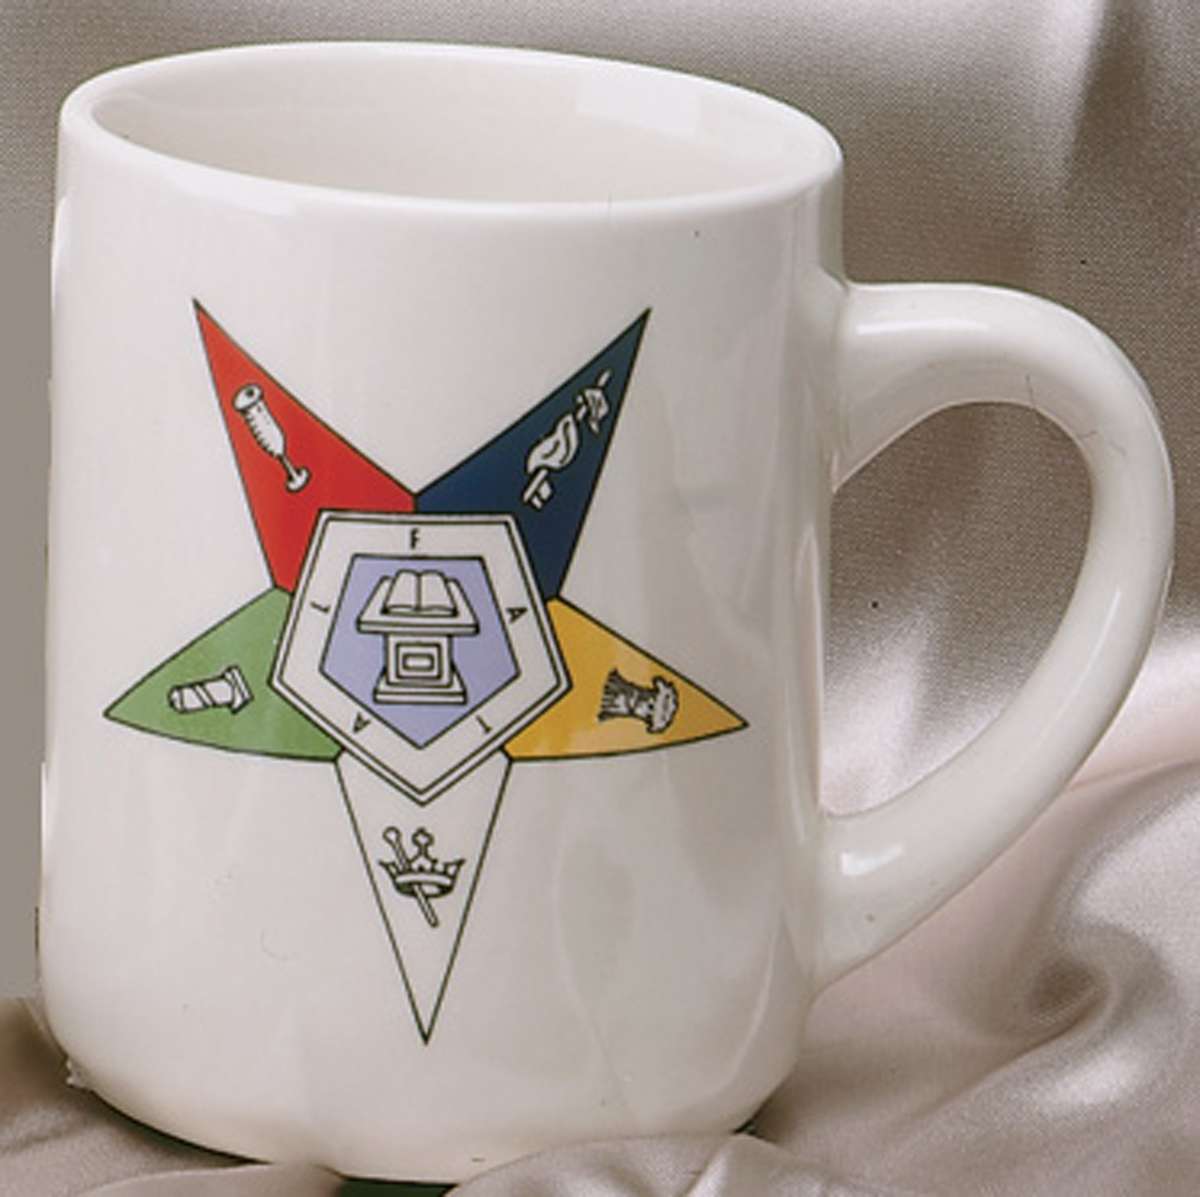 OES ceramic mug